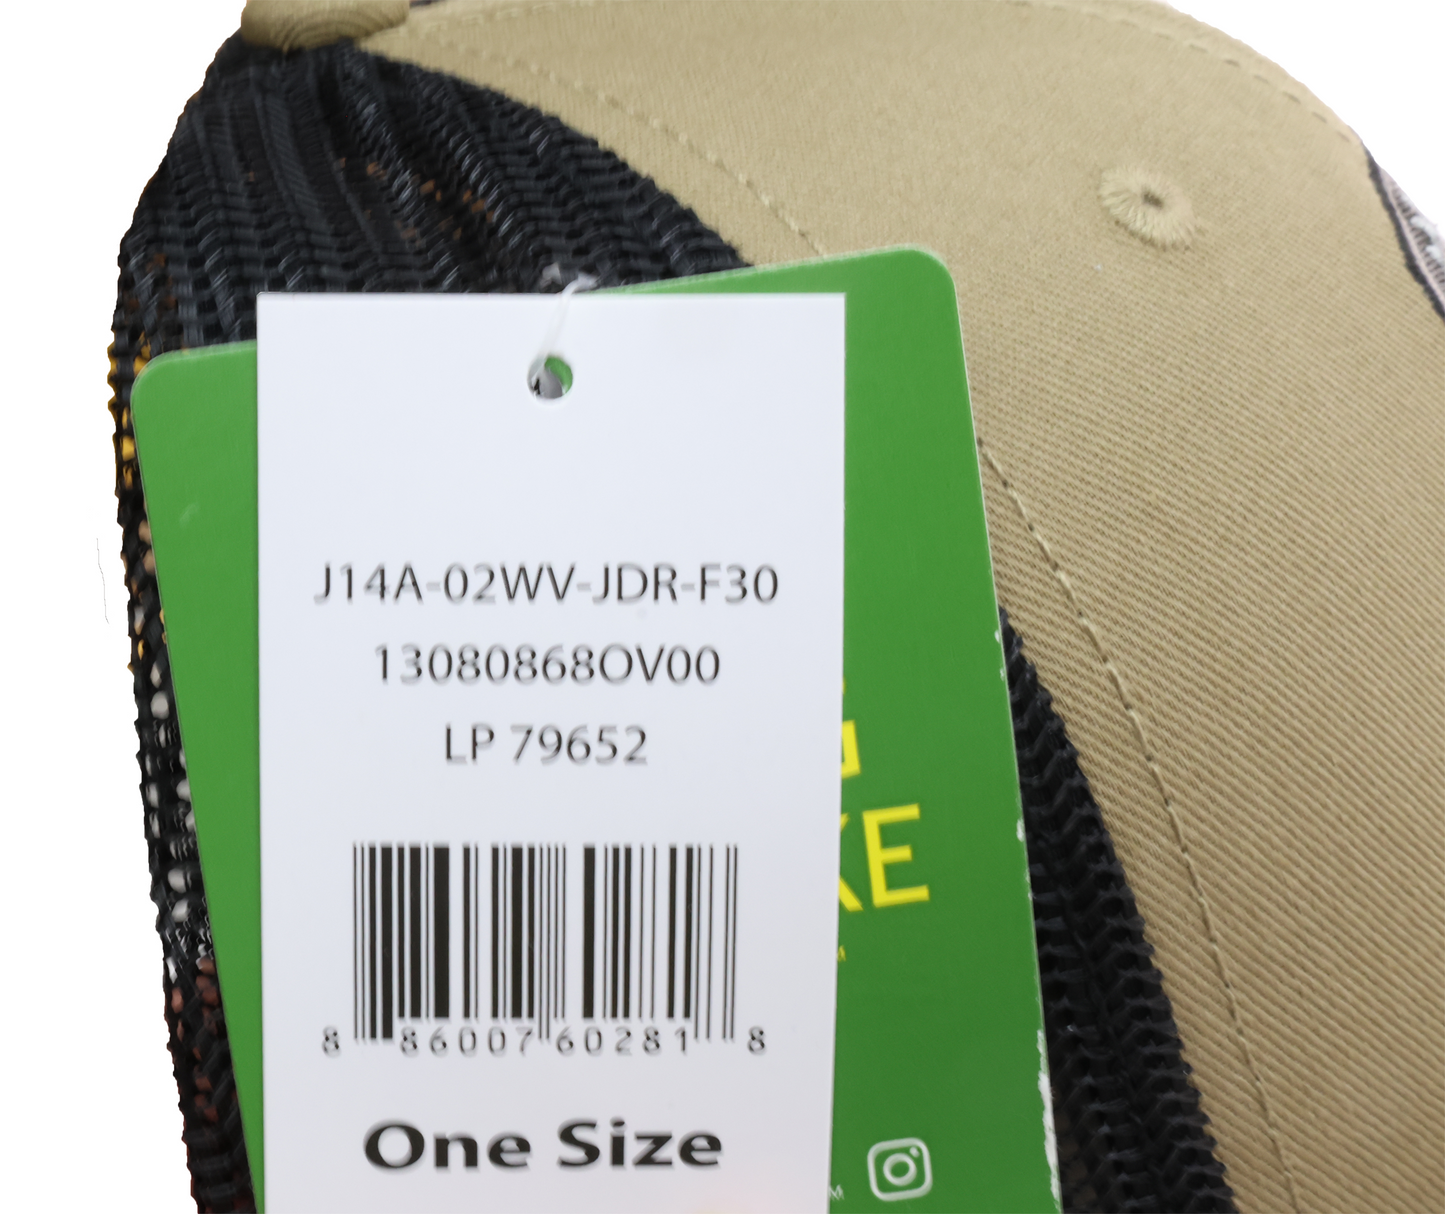 John Deere Unisex Olive TM Cap - LP79652